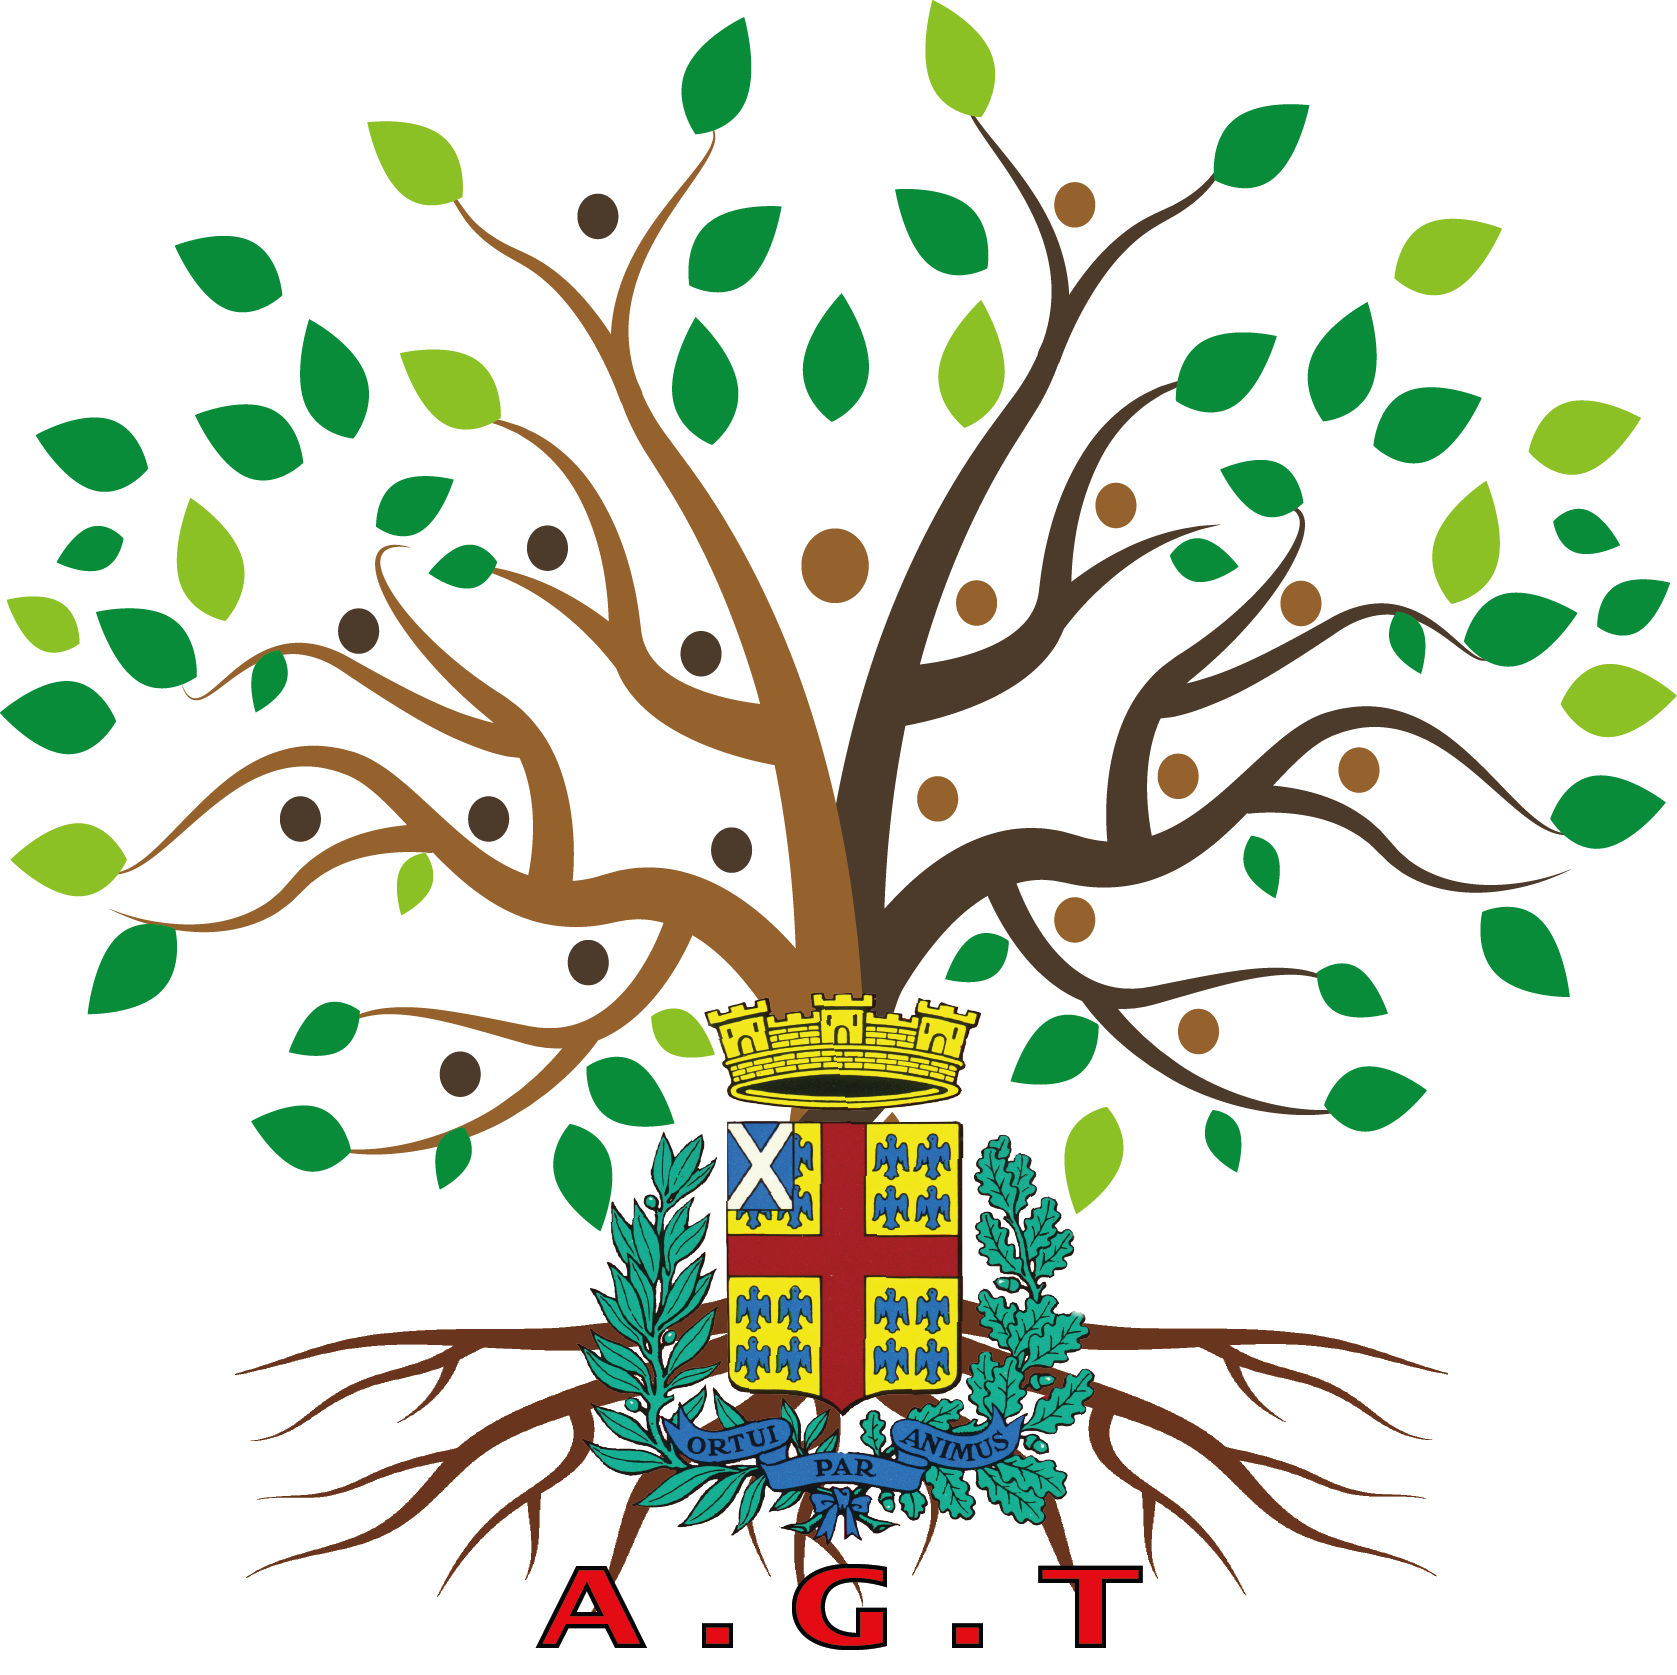 Logo AGT